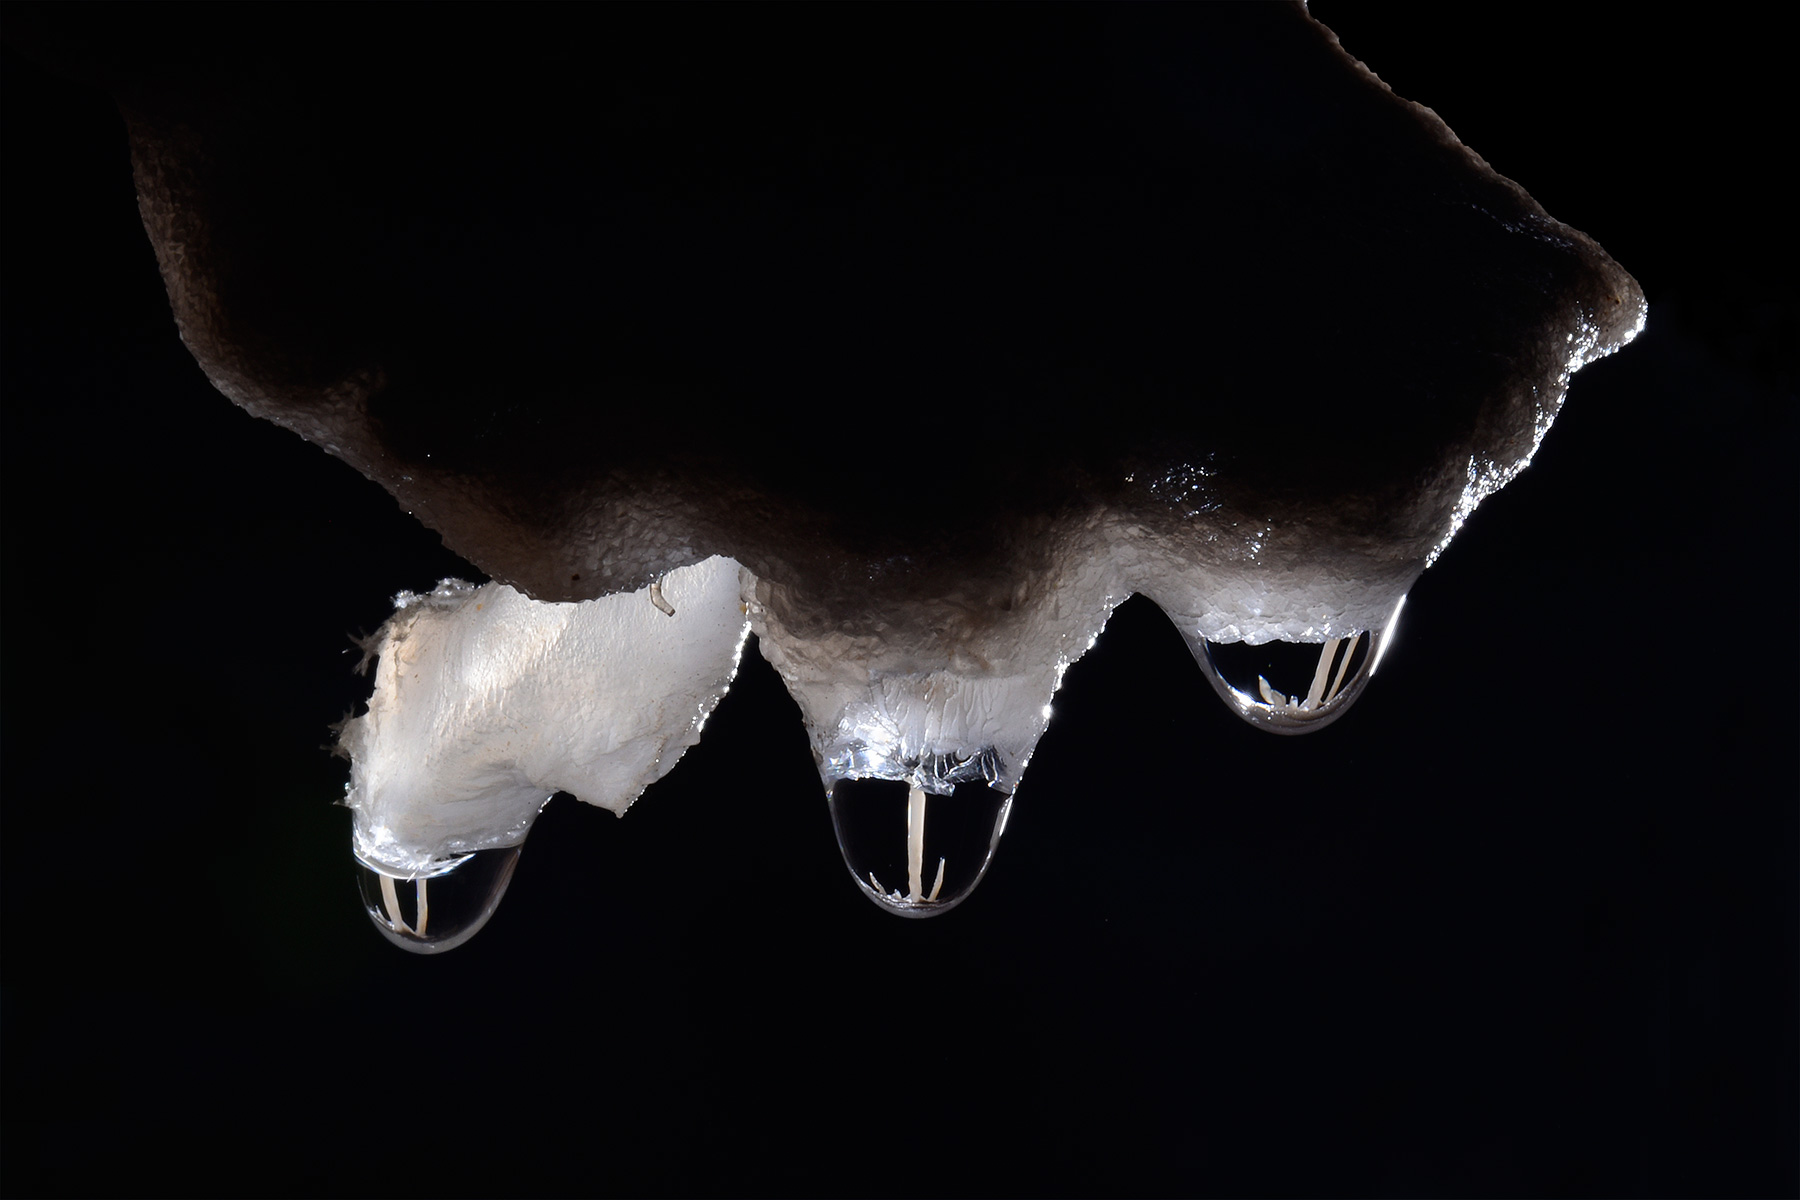 Barralong Cave (Jenolan Karst Conservation Reserve, Australie) - Reflets de fistuleuses dans les gouttes de trois petites stalactites